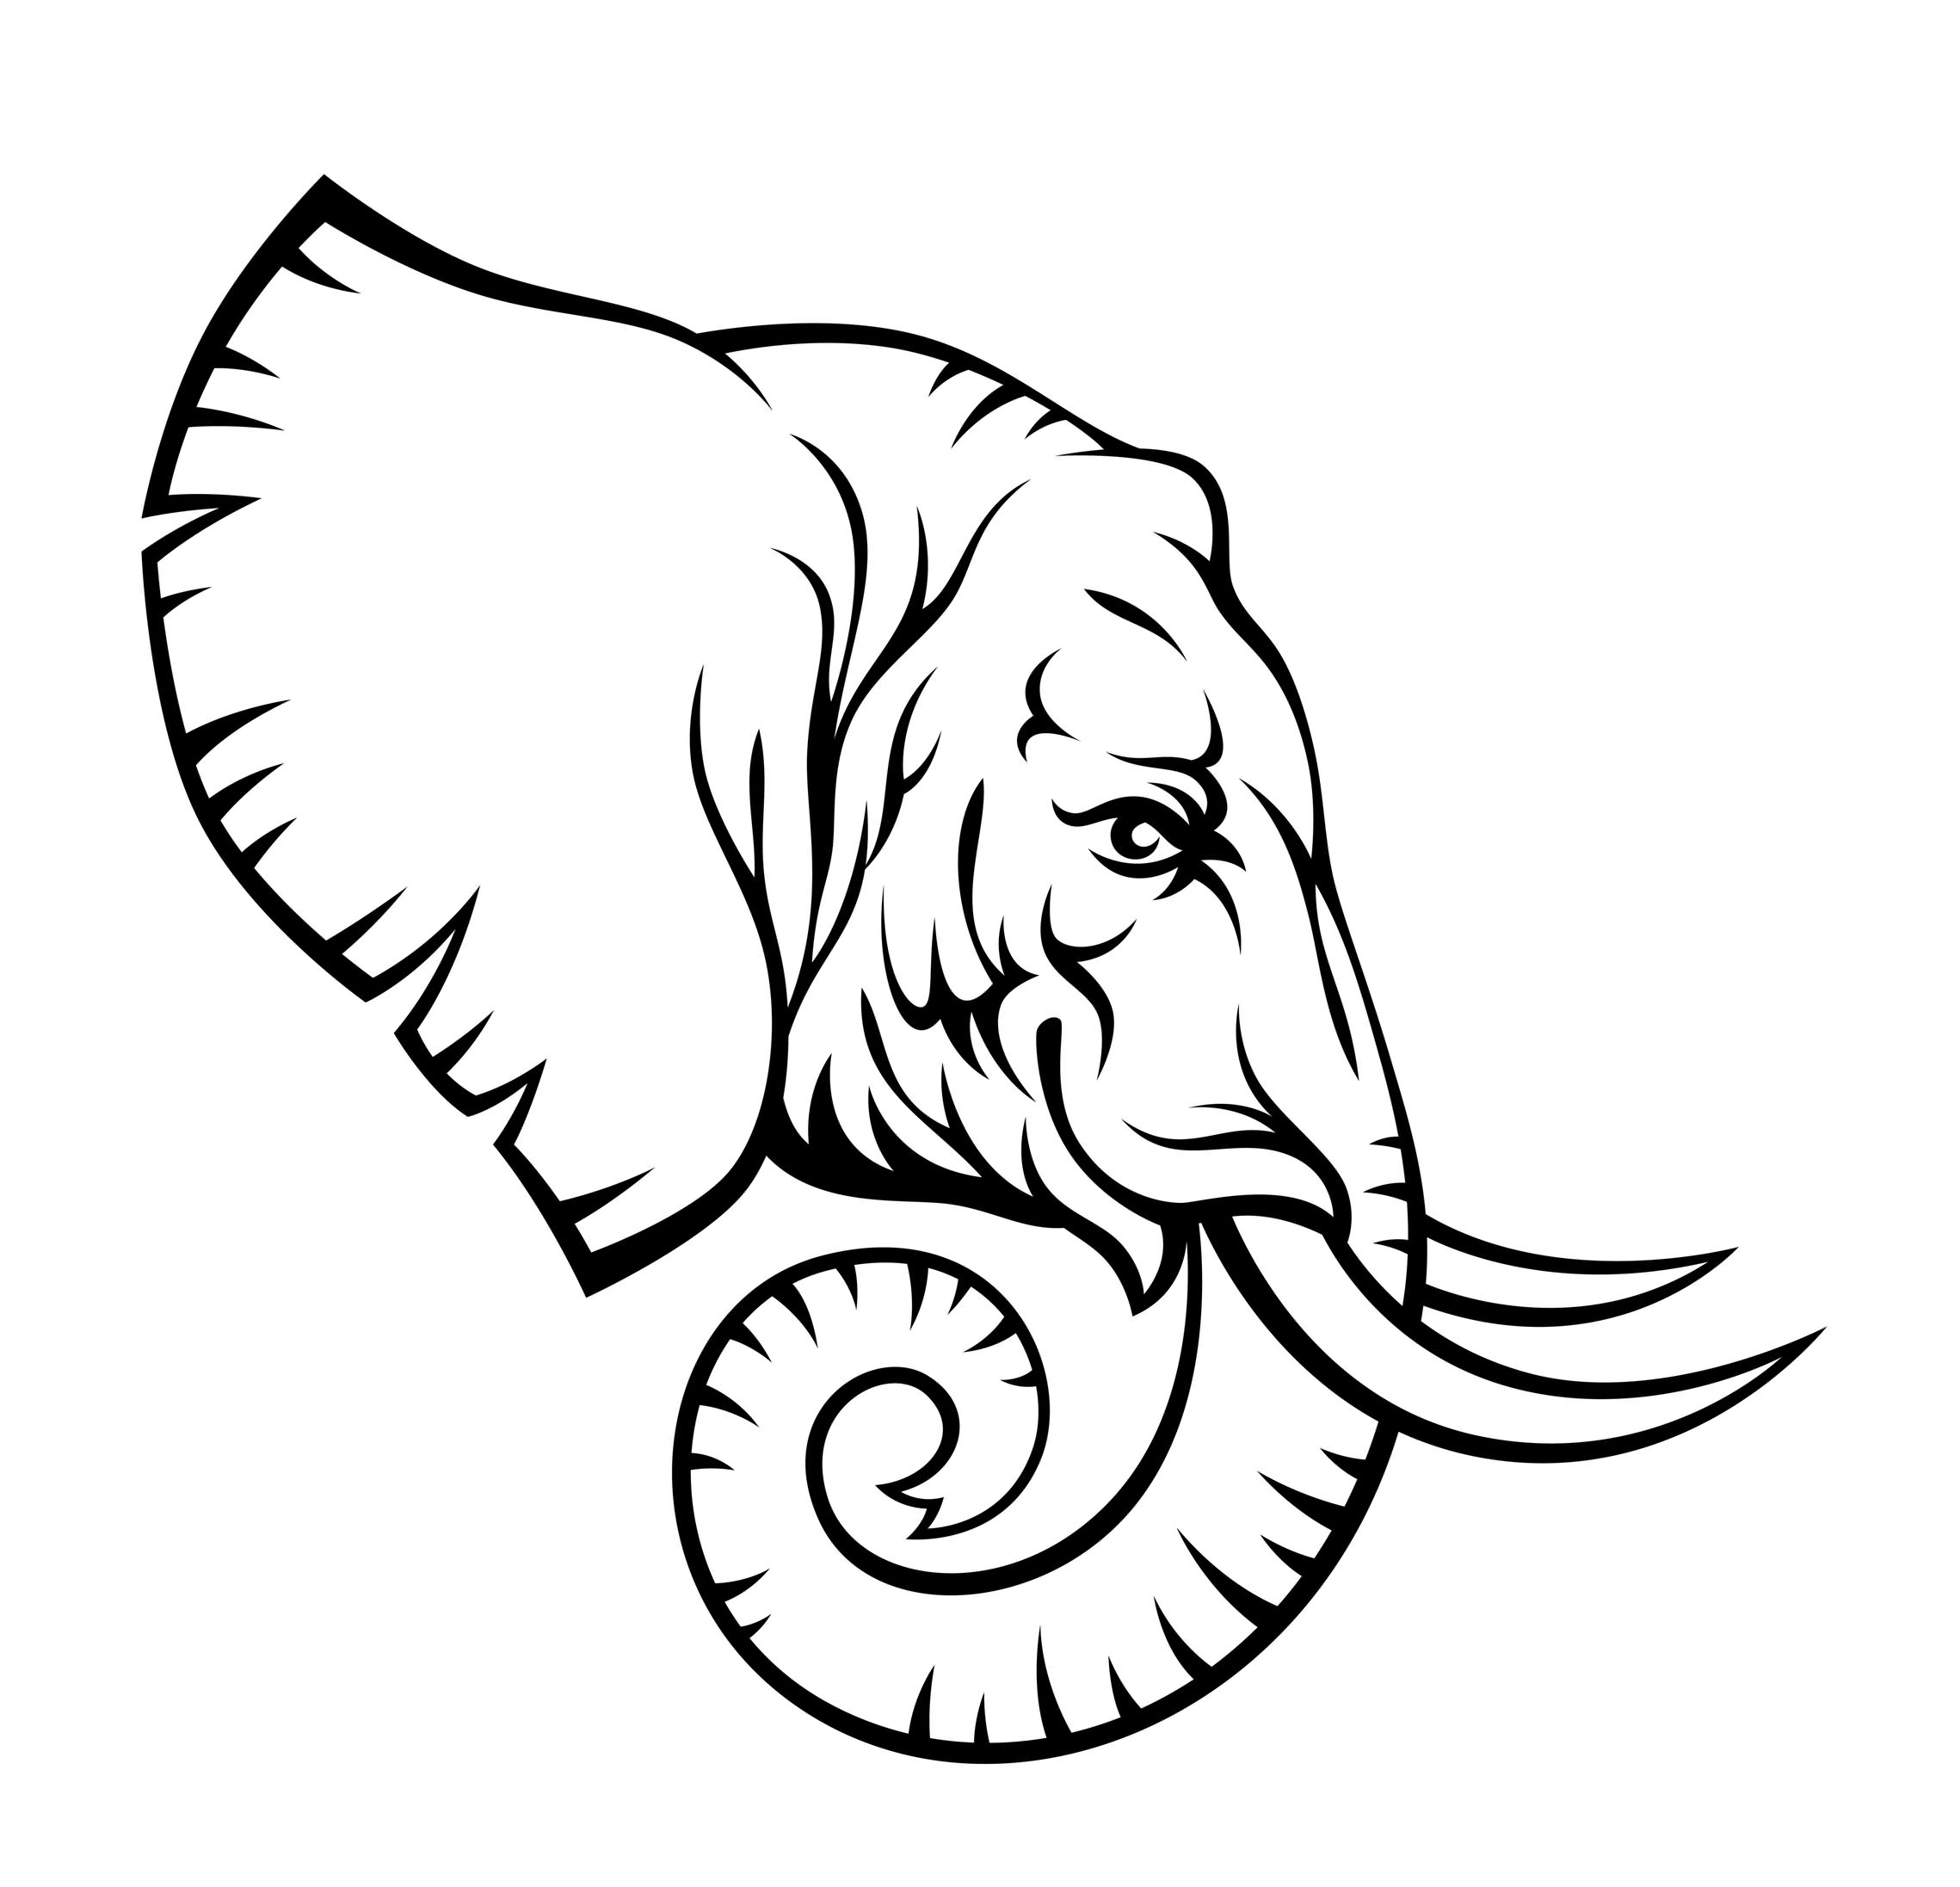 Serious black-contour elephant head tattoo design